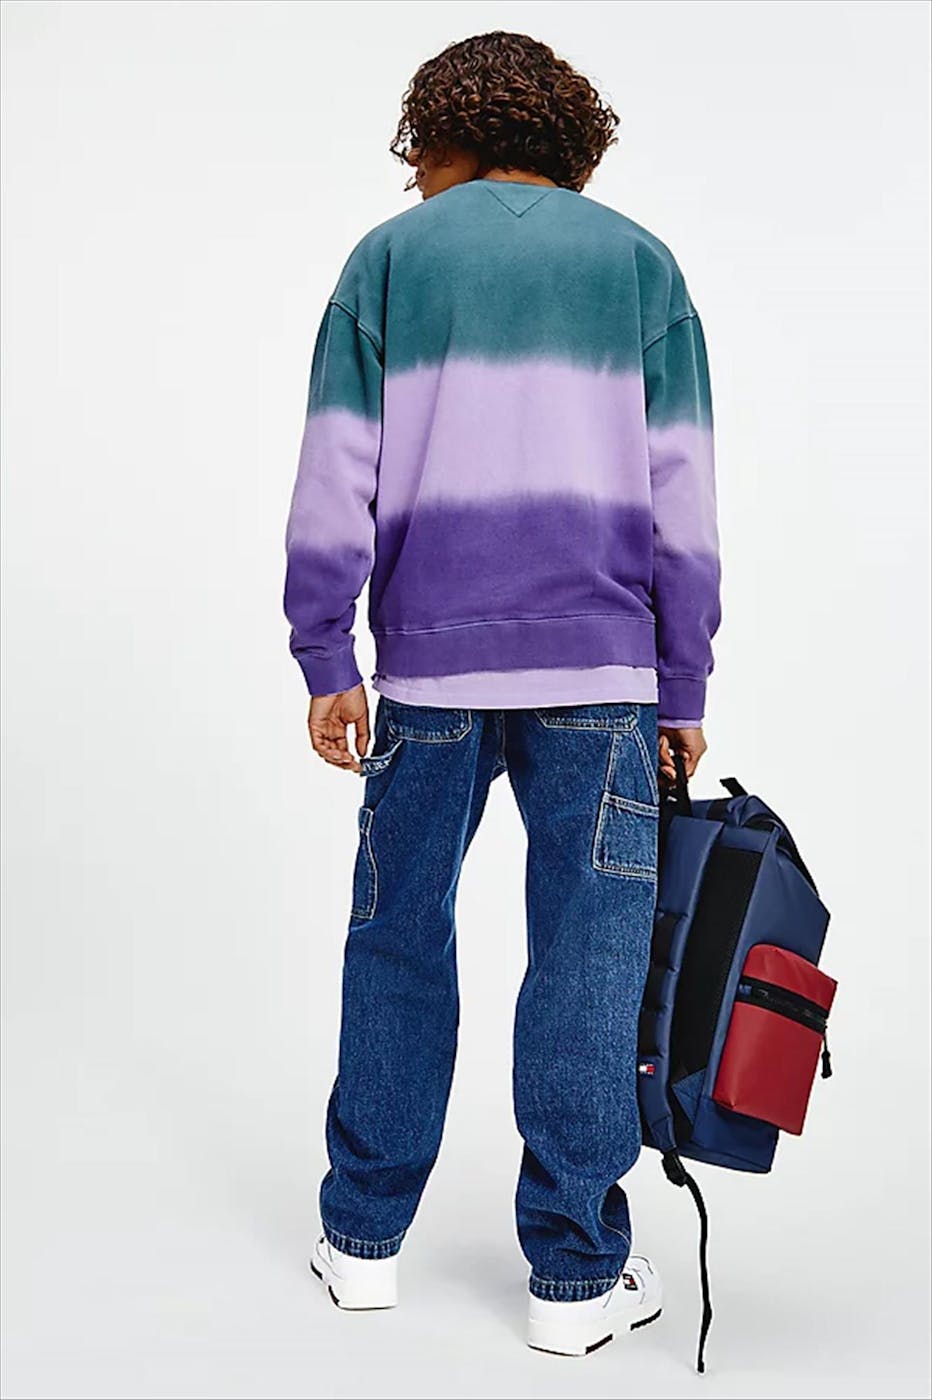 Tommy Jeans - Groen-paarse TJM Colorblock Tie-Dye Crew sweater